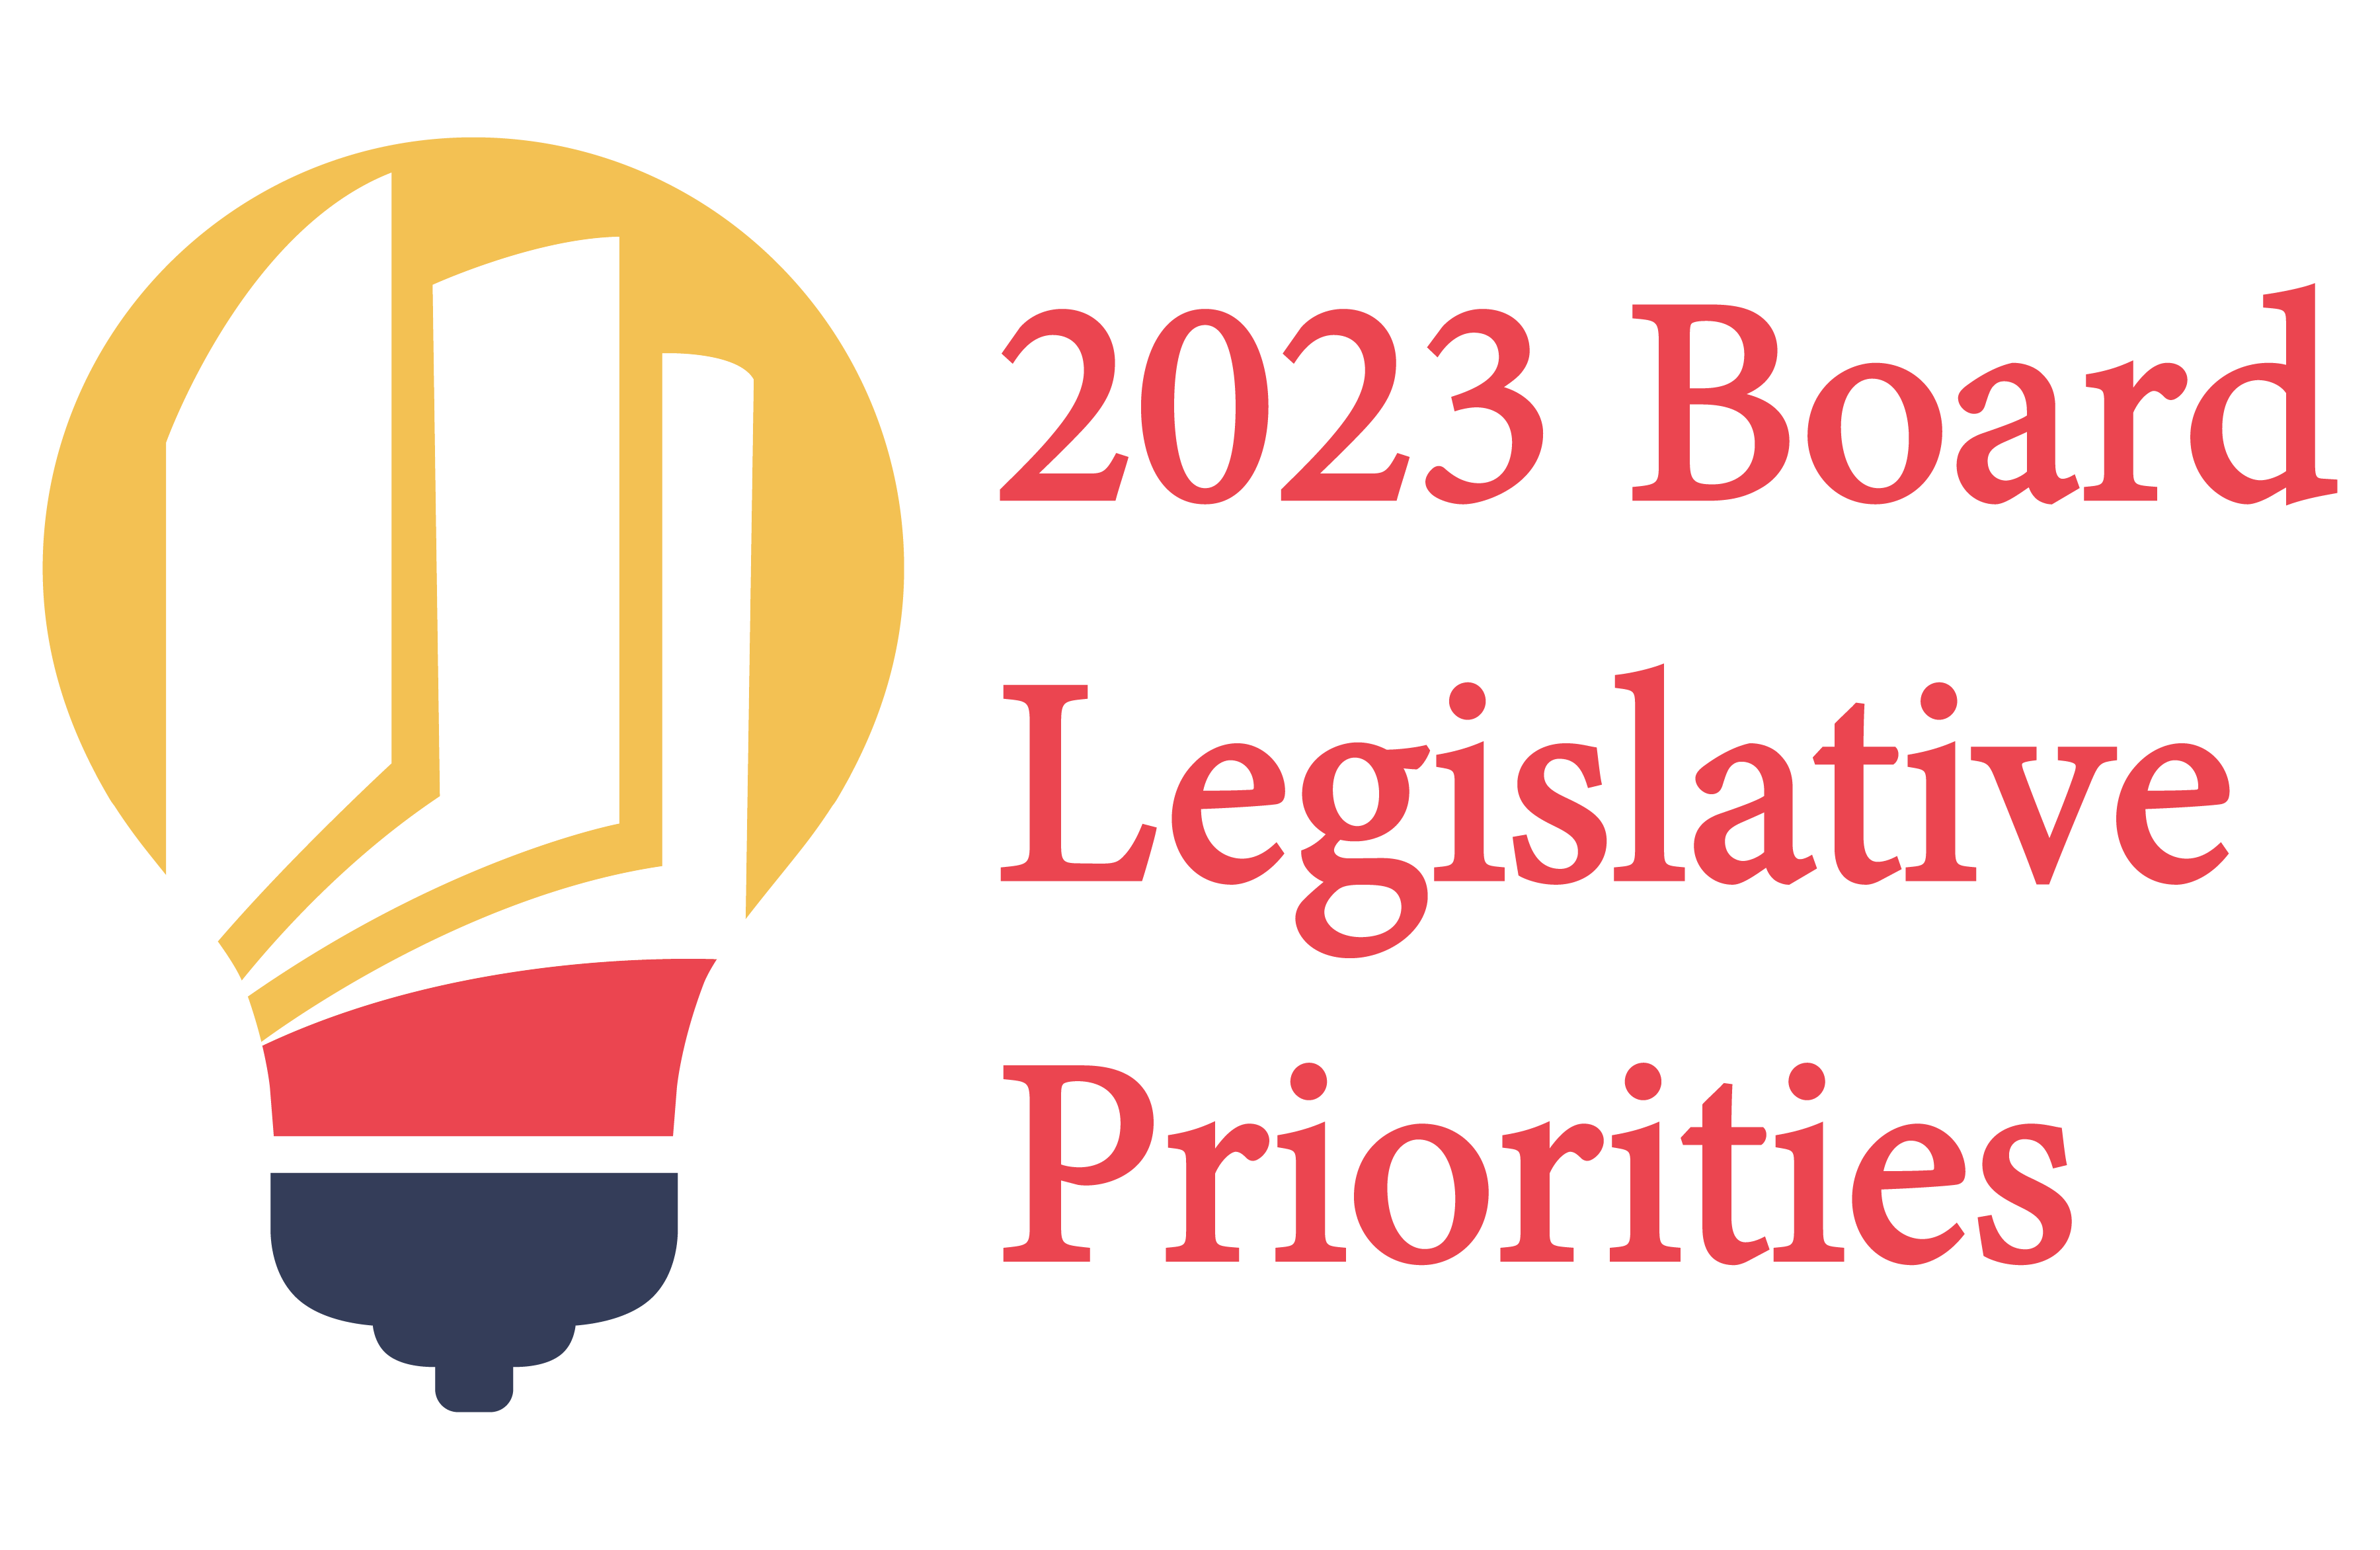 2023 Board Legislative Priorities